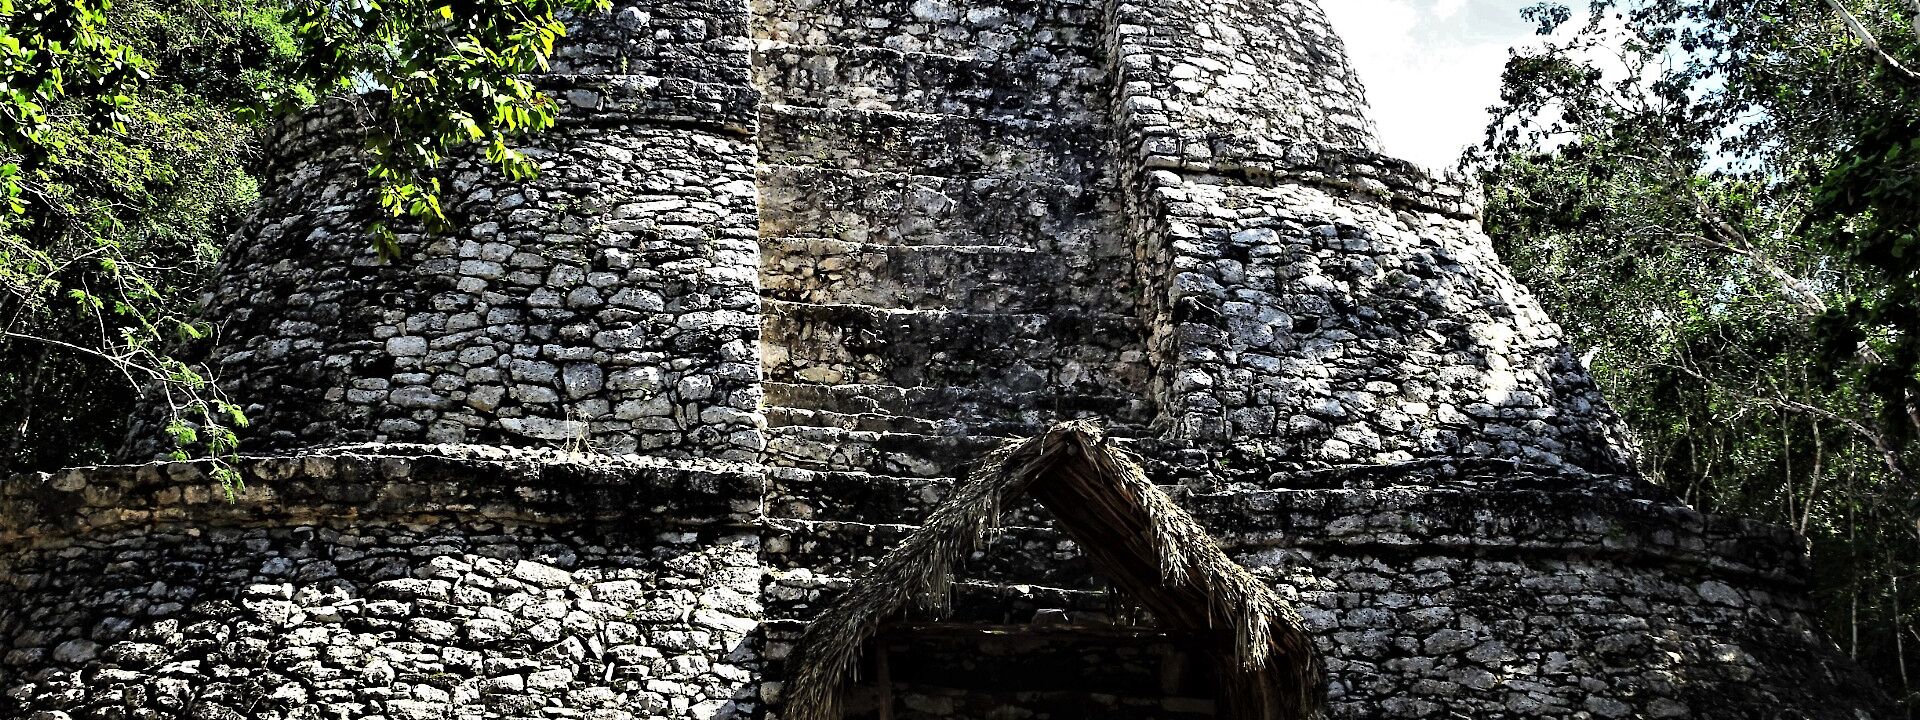 Mayan ruins, Coba, Quintana Roo. Unsplash: Laura La Brie